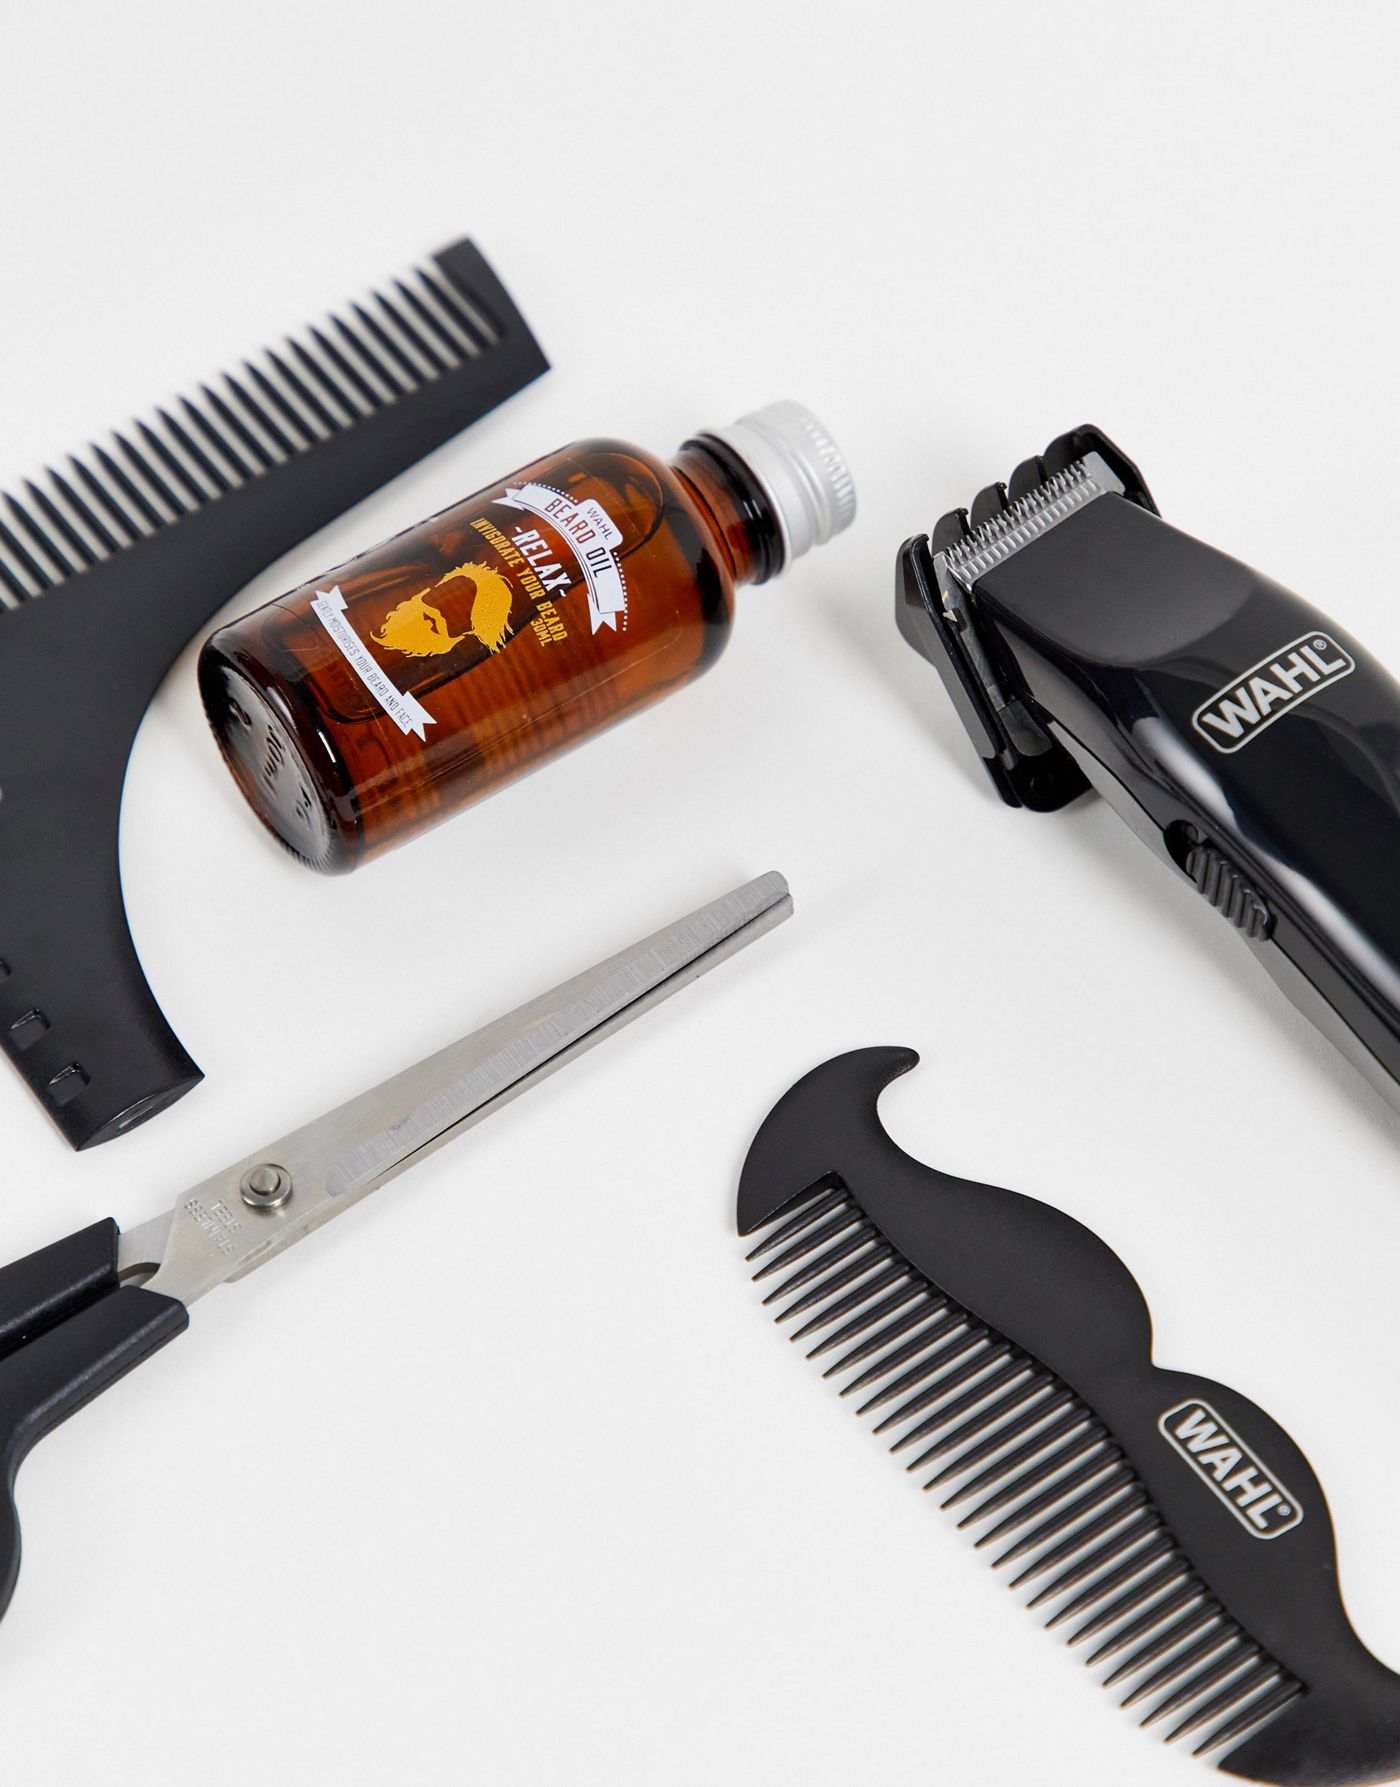 Wahl Beard Grooming Trimmer Kit